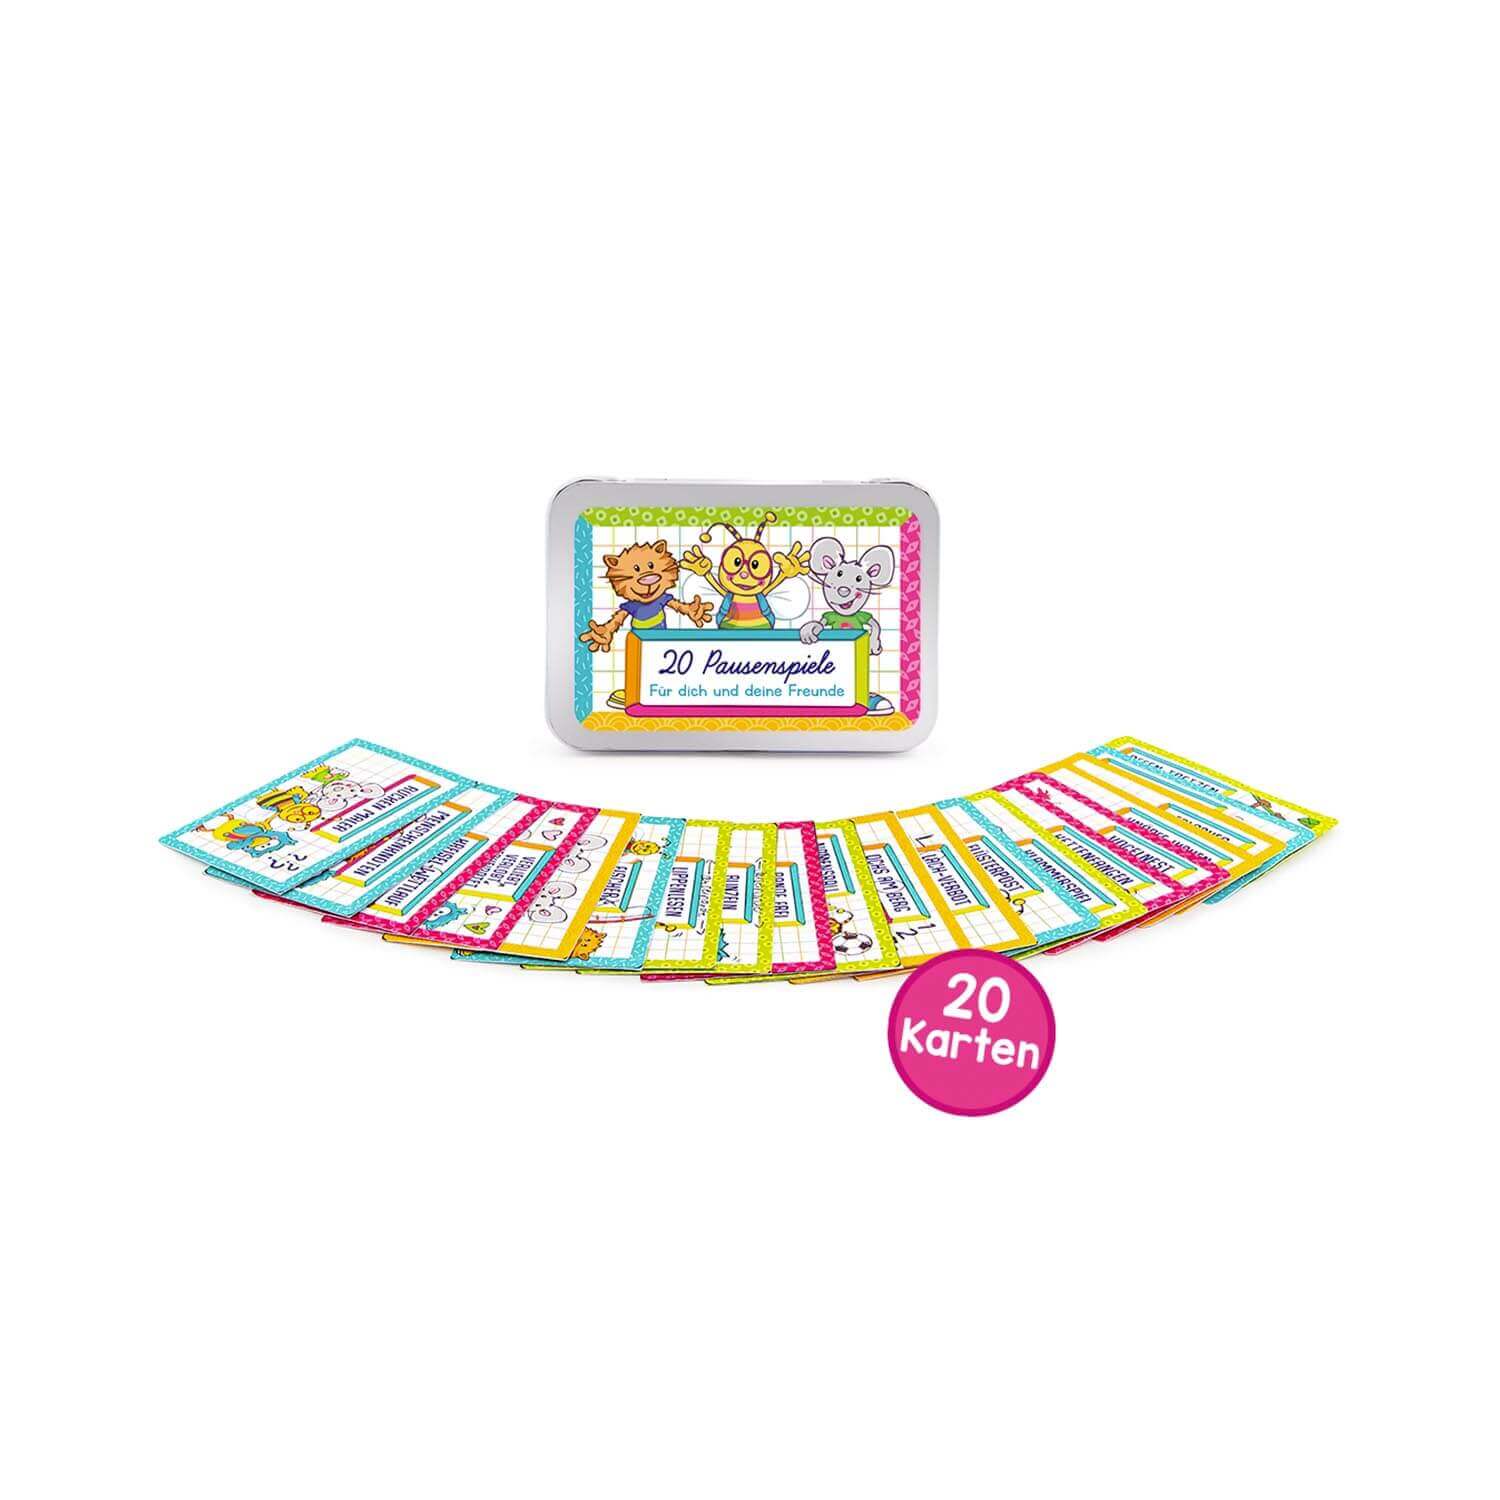 ABC 20 Pausenspiele in einer Metallbox mit Anleitung und 20 Karten